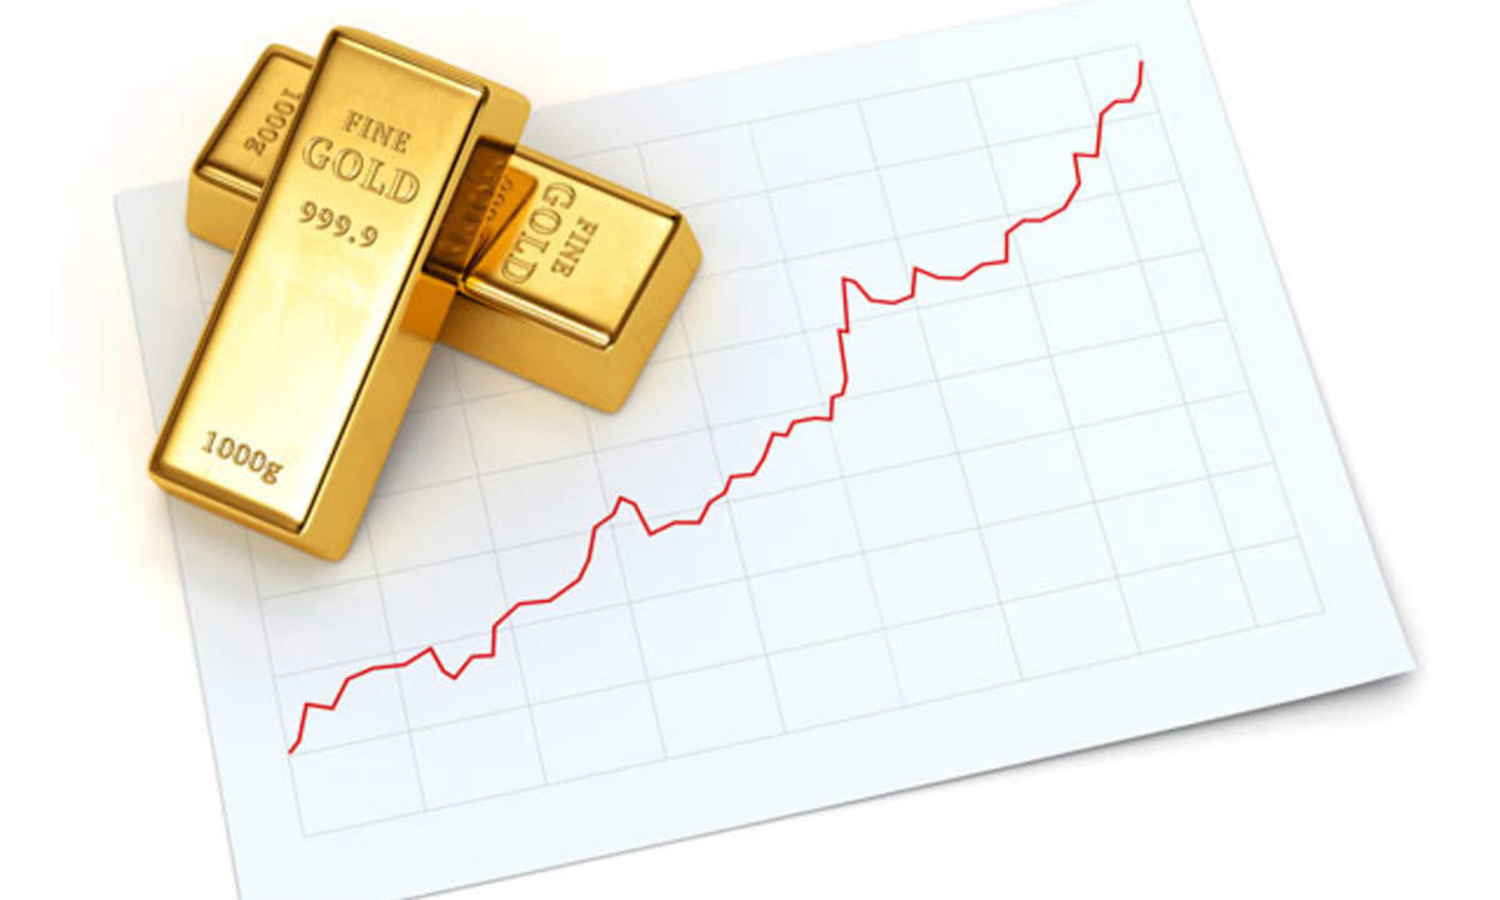 Prices bank. Investment in Gold. Золото ETF акции. Инвестирование в золото за и против. Стоимость золотых слитков на графике.